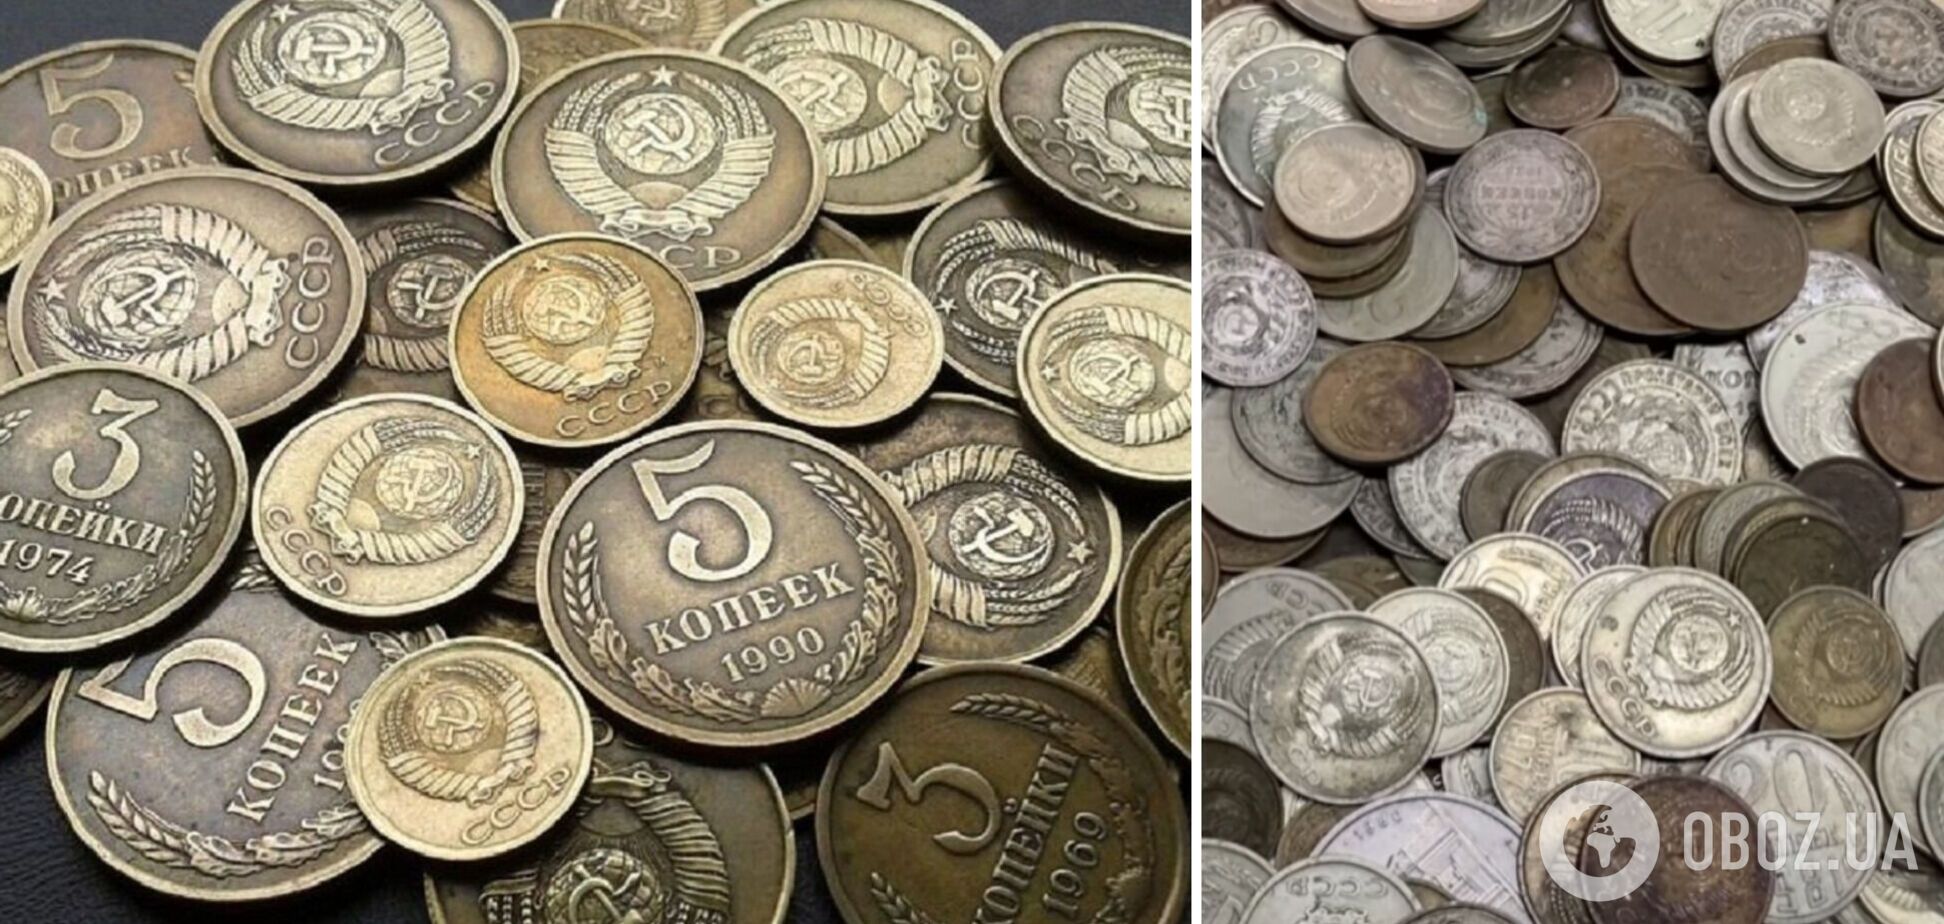 Чего стоят залежавшиеся в старых кошельках монеты СССР